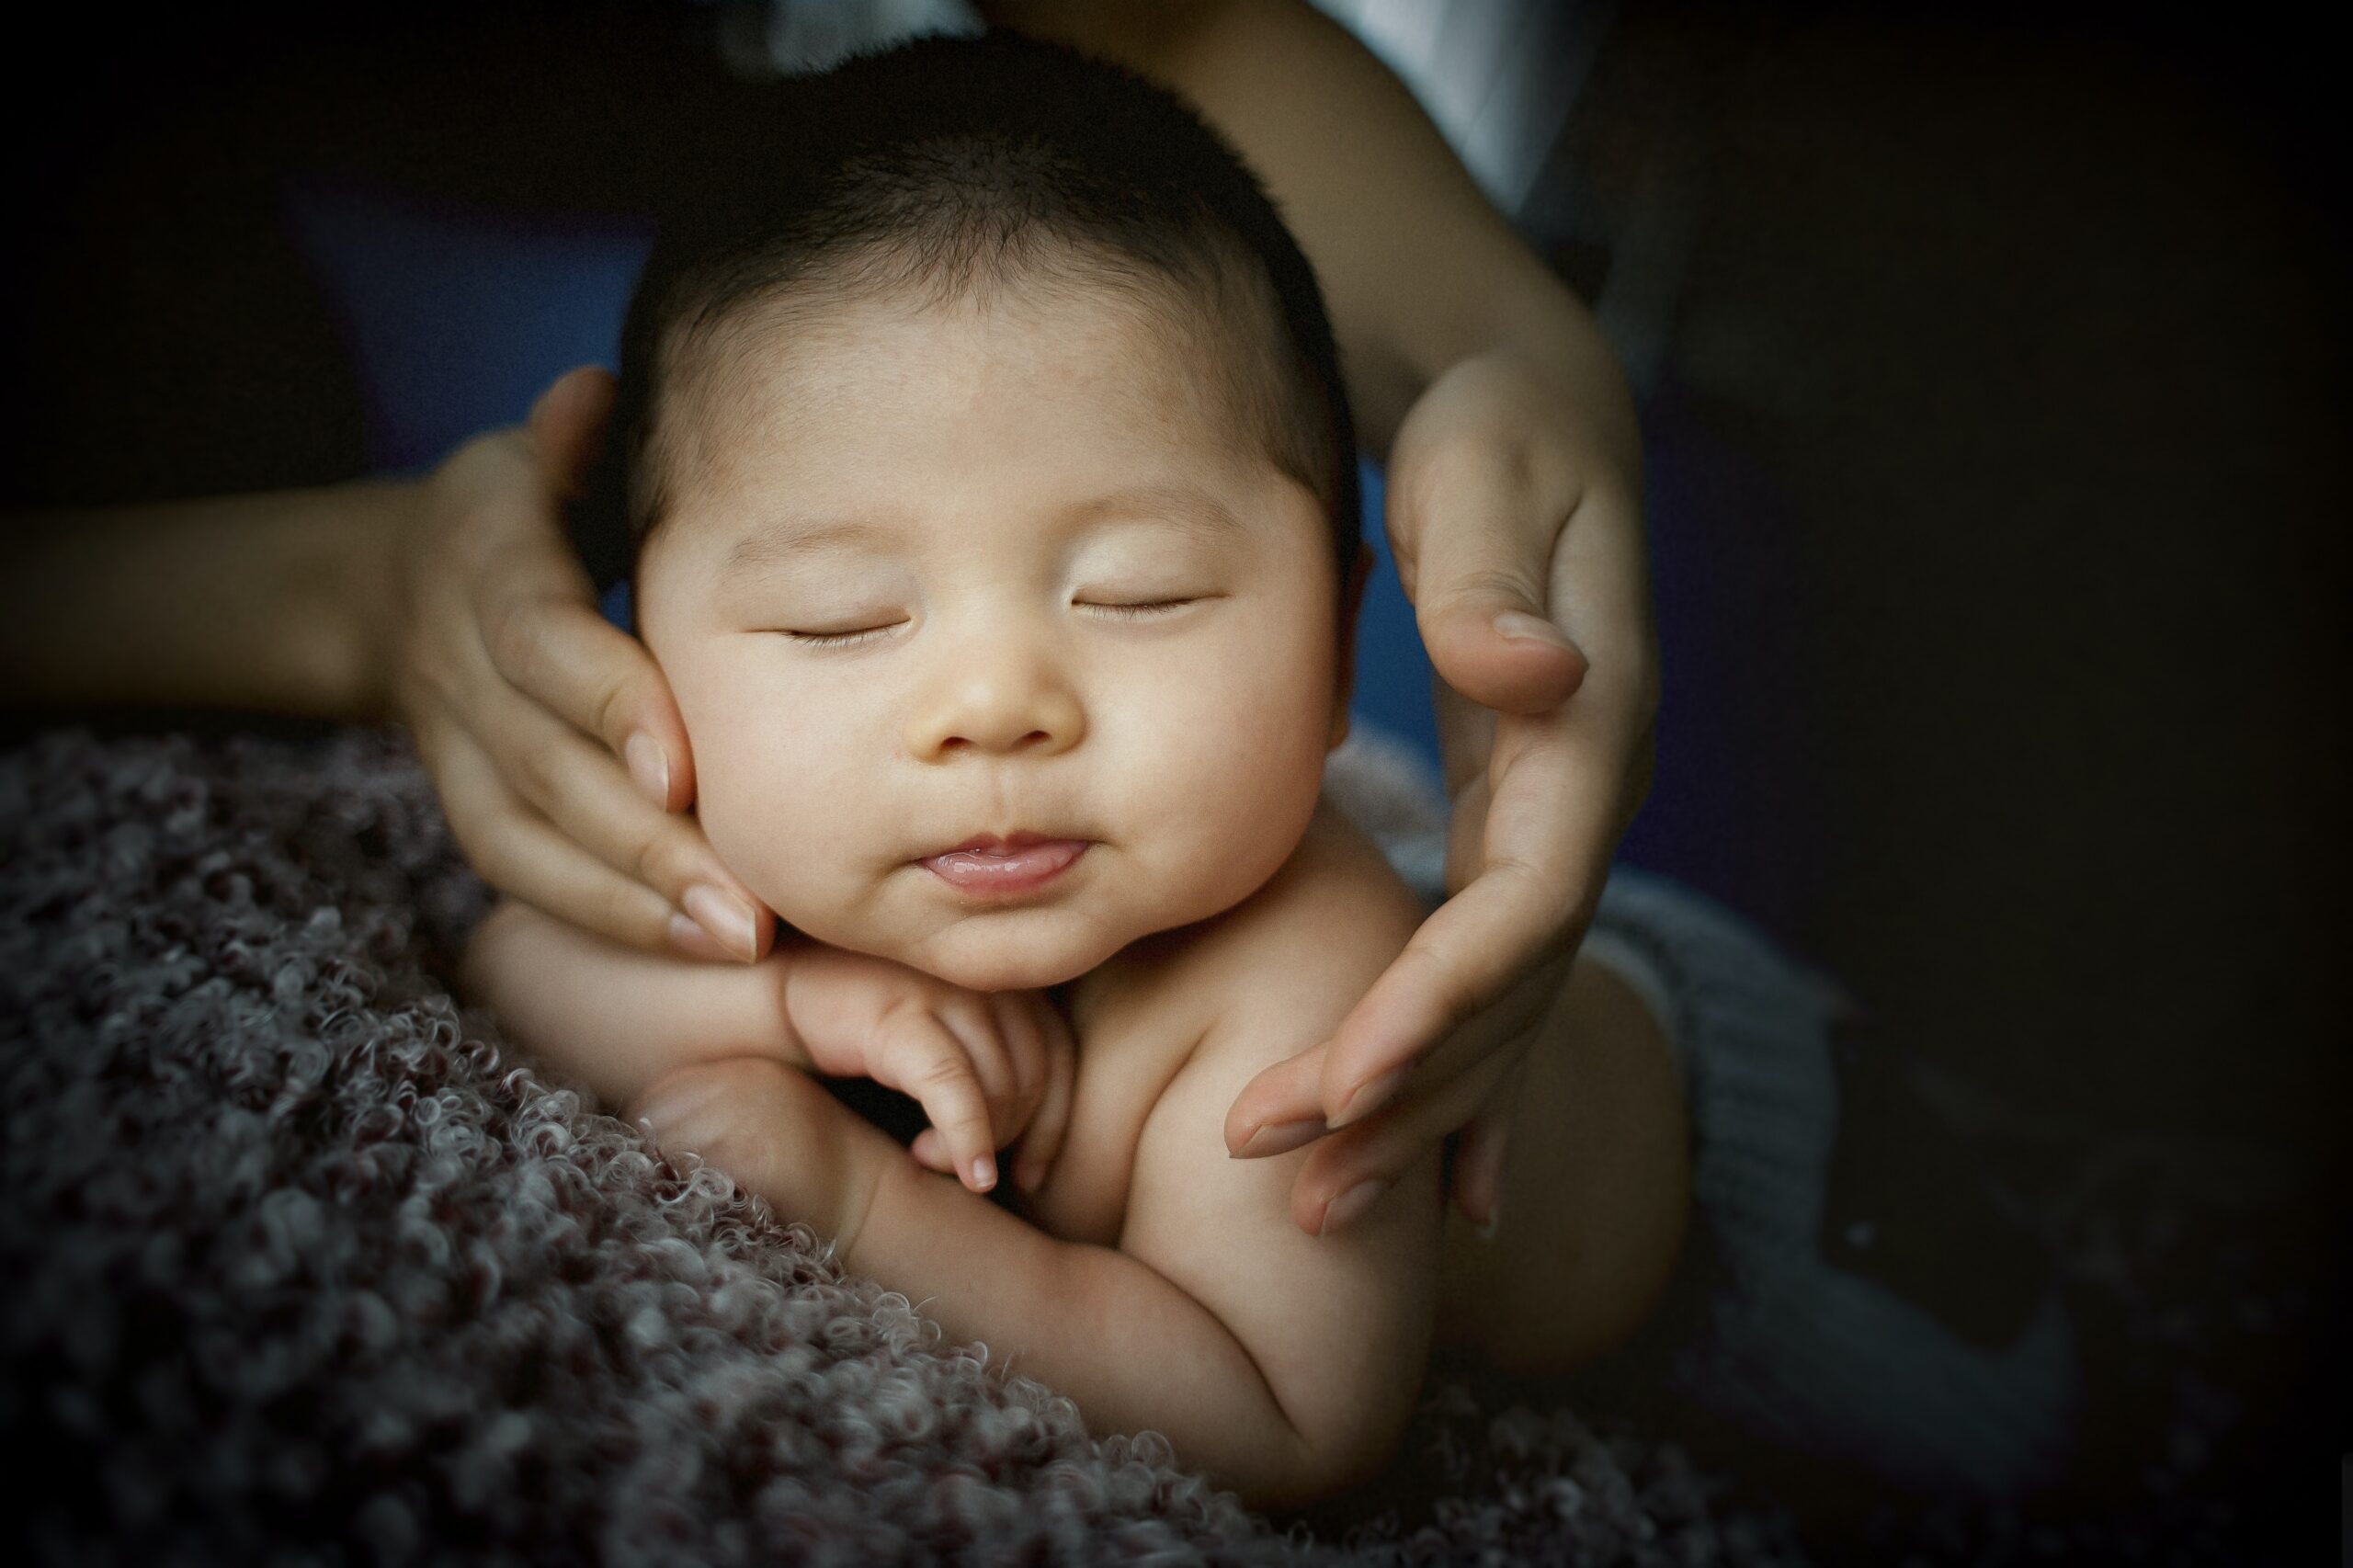 Tips To Help Your Baby Sleep Well